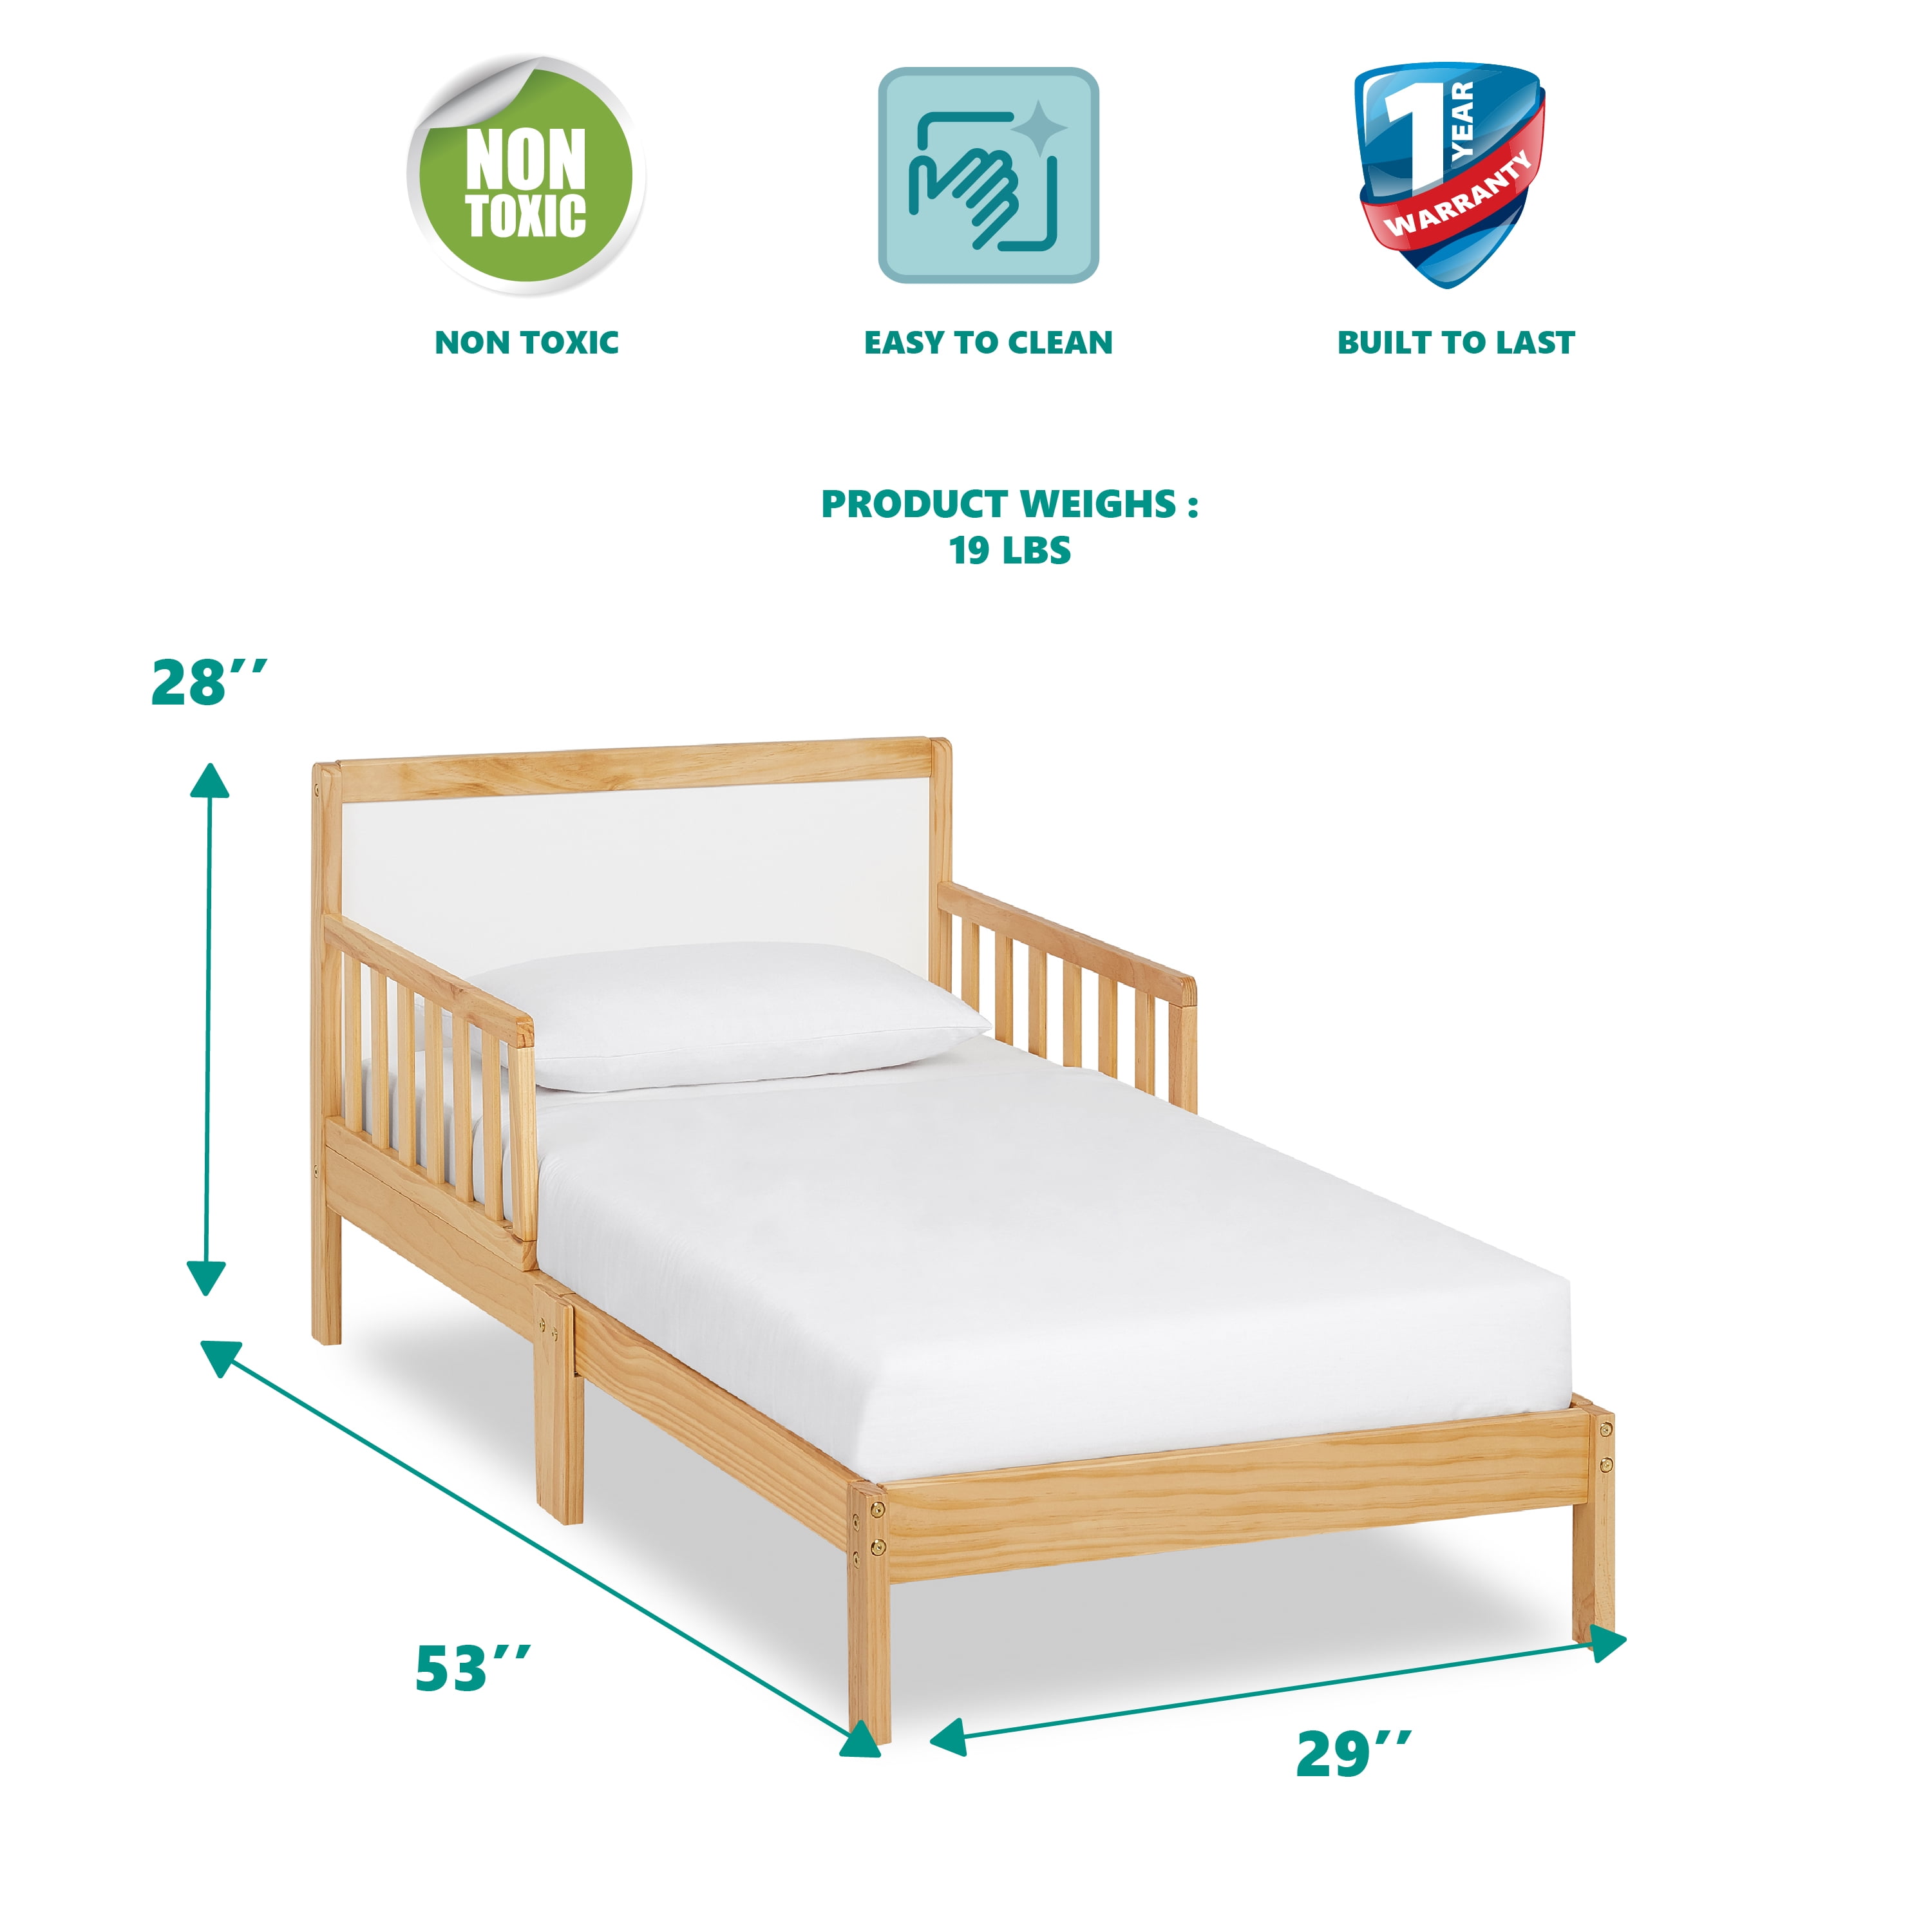 Giường cũi cho trẻ em: Bé yêu của bạn sẽ có giấc ngủ ngon và an toàn hơn với chiếc giường cũi thiết kế đặc biệt này. Chất liệu cao cấp, kiểu dáng đẹp mắt và khả năng điều chỉnh độ cao sẽ giúp bé thoải mái và phát triển tốt hơn. Xem hình liên quan để trải nghiệm thêm về sản phẩm này.